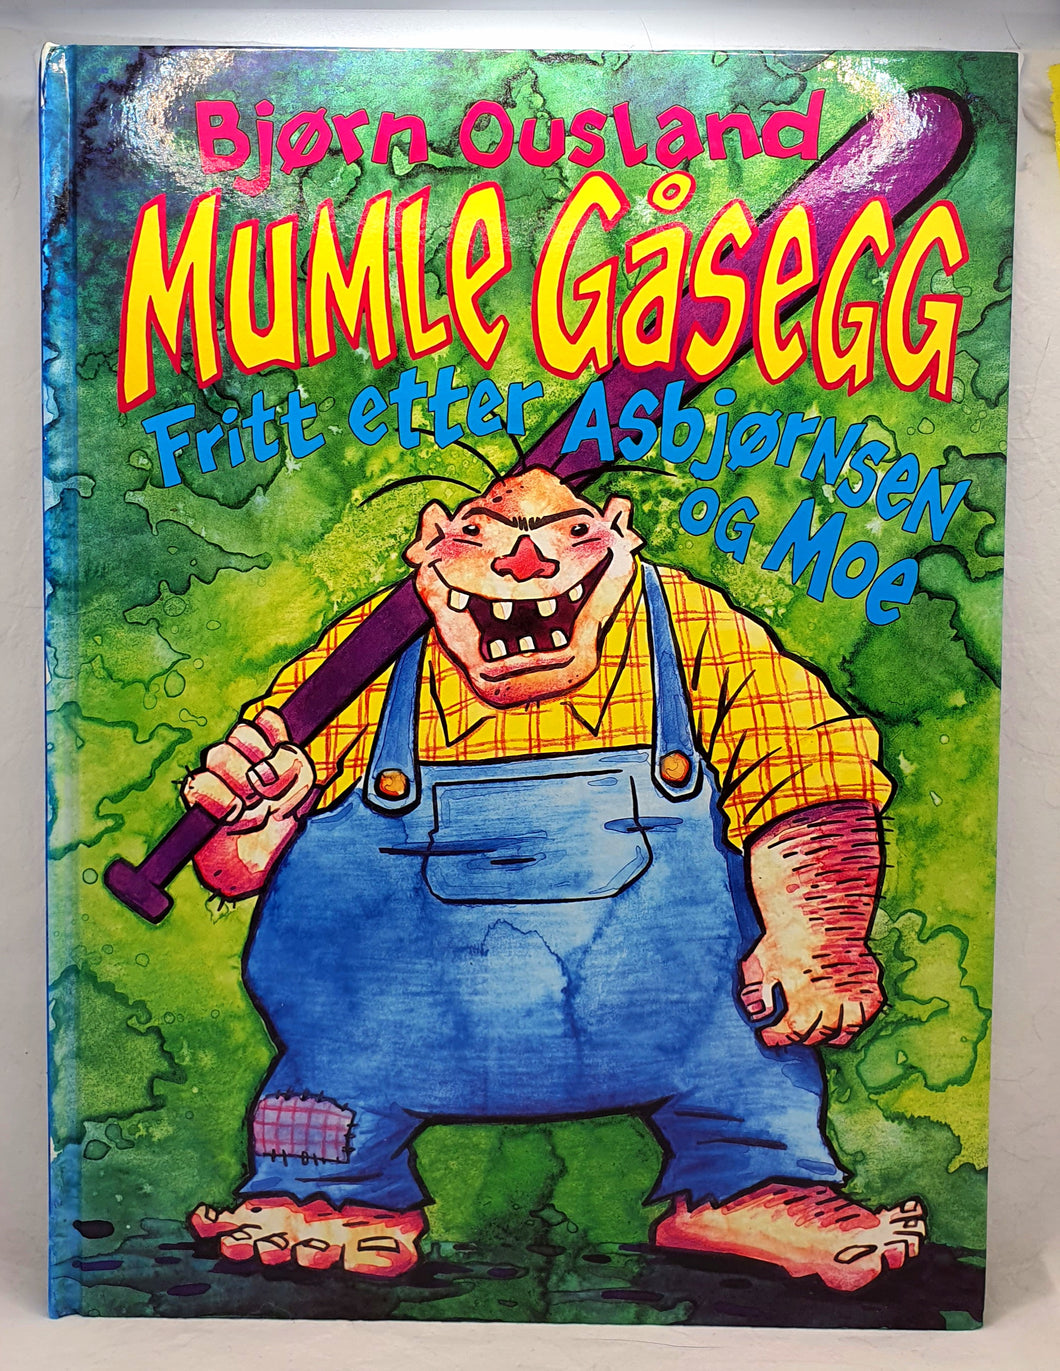 Mumle Gåsegg i tegneserieversjon av Bjørn Ousland. Forside.